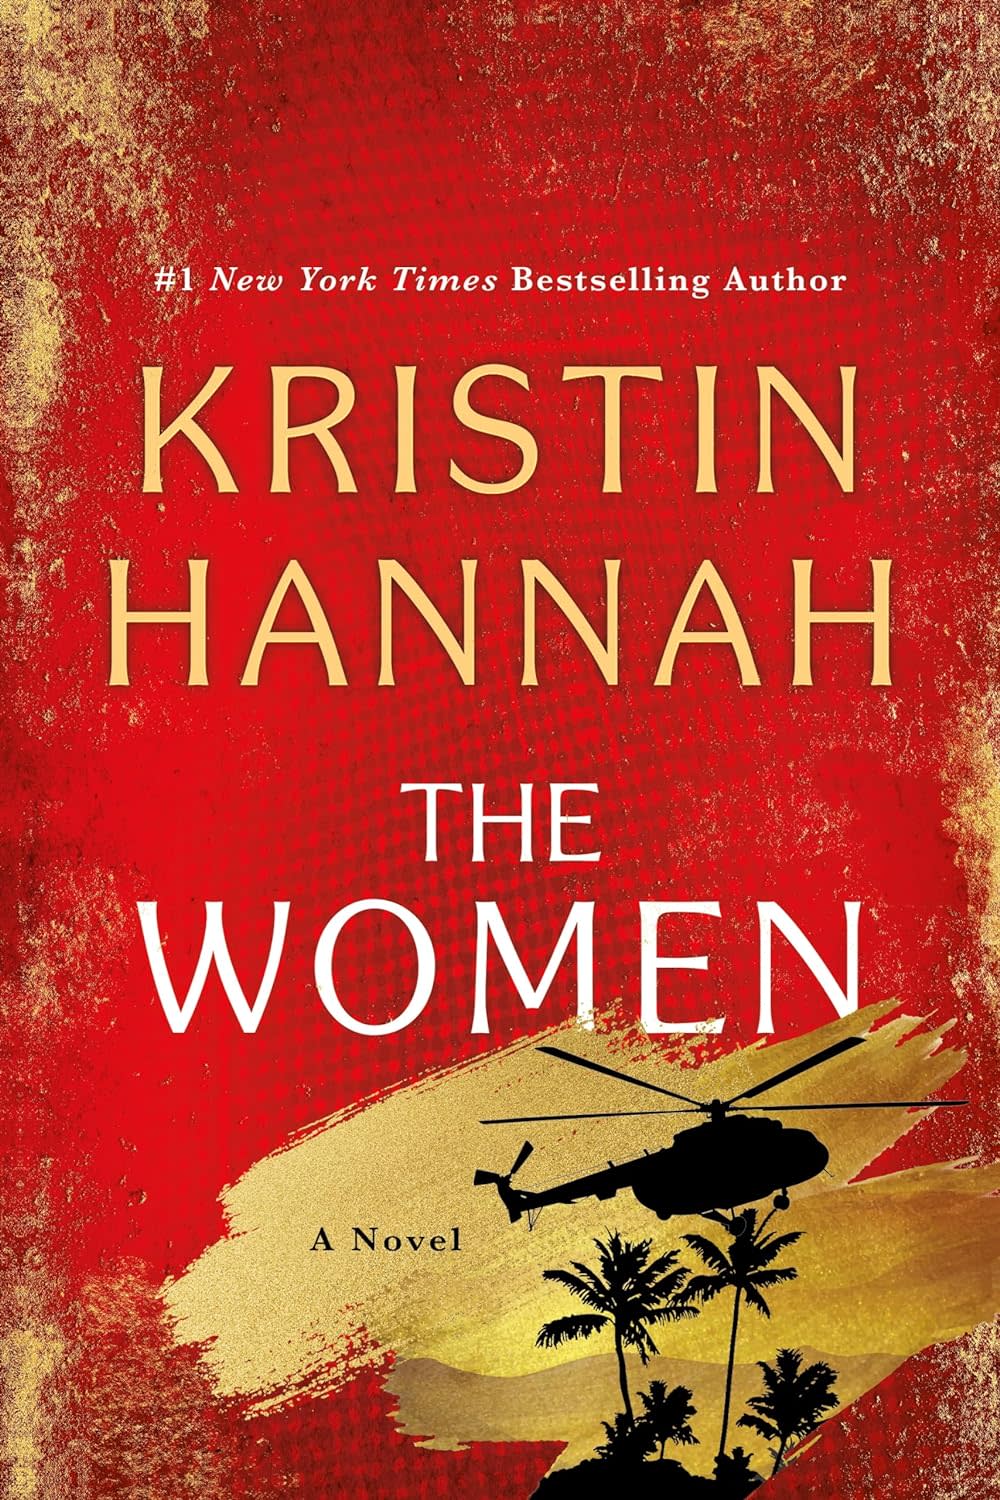 "The Women: A Novel," by Kristin Hannah